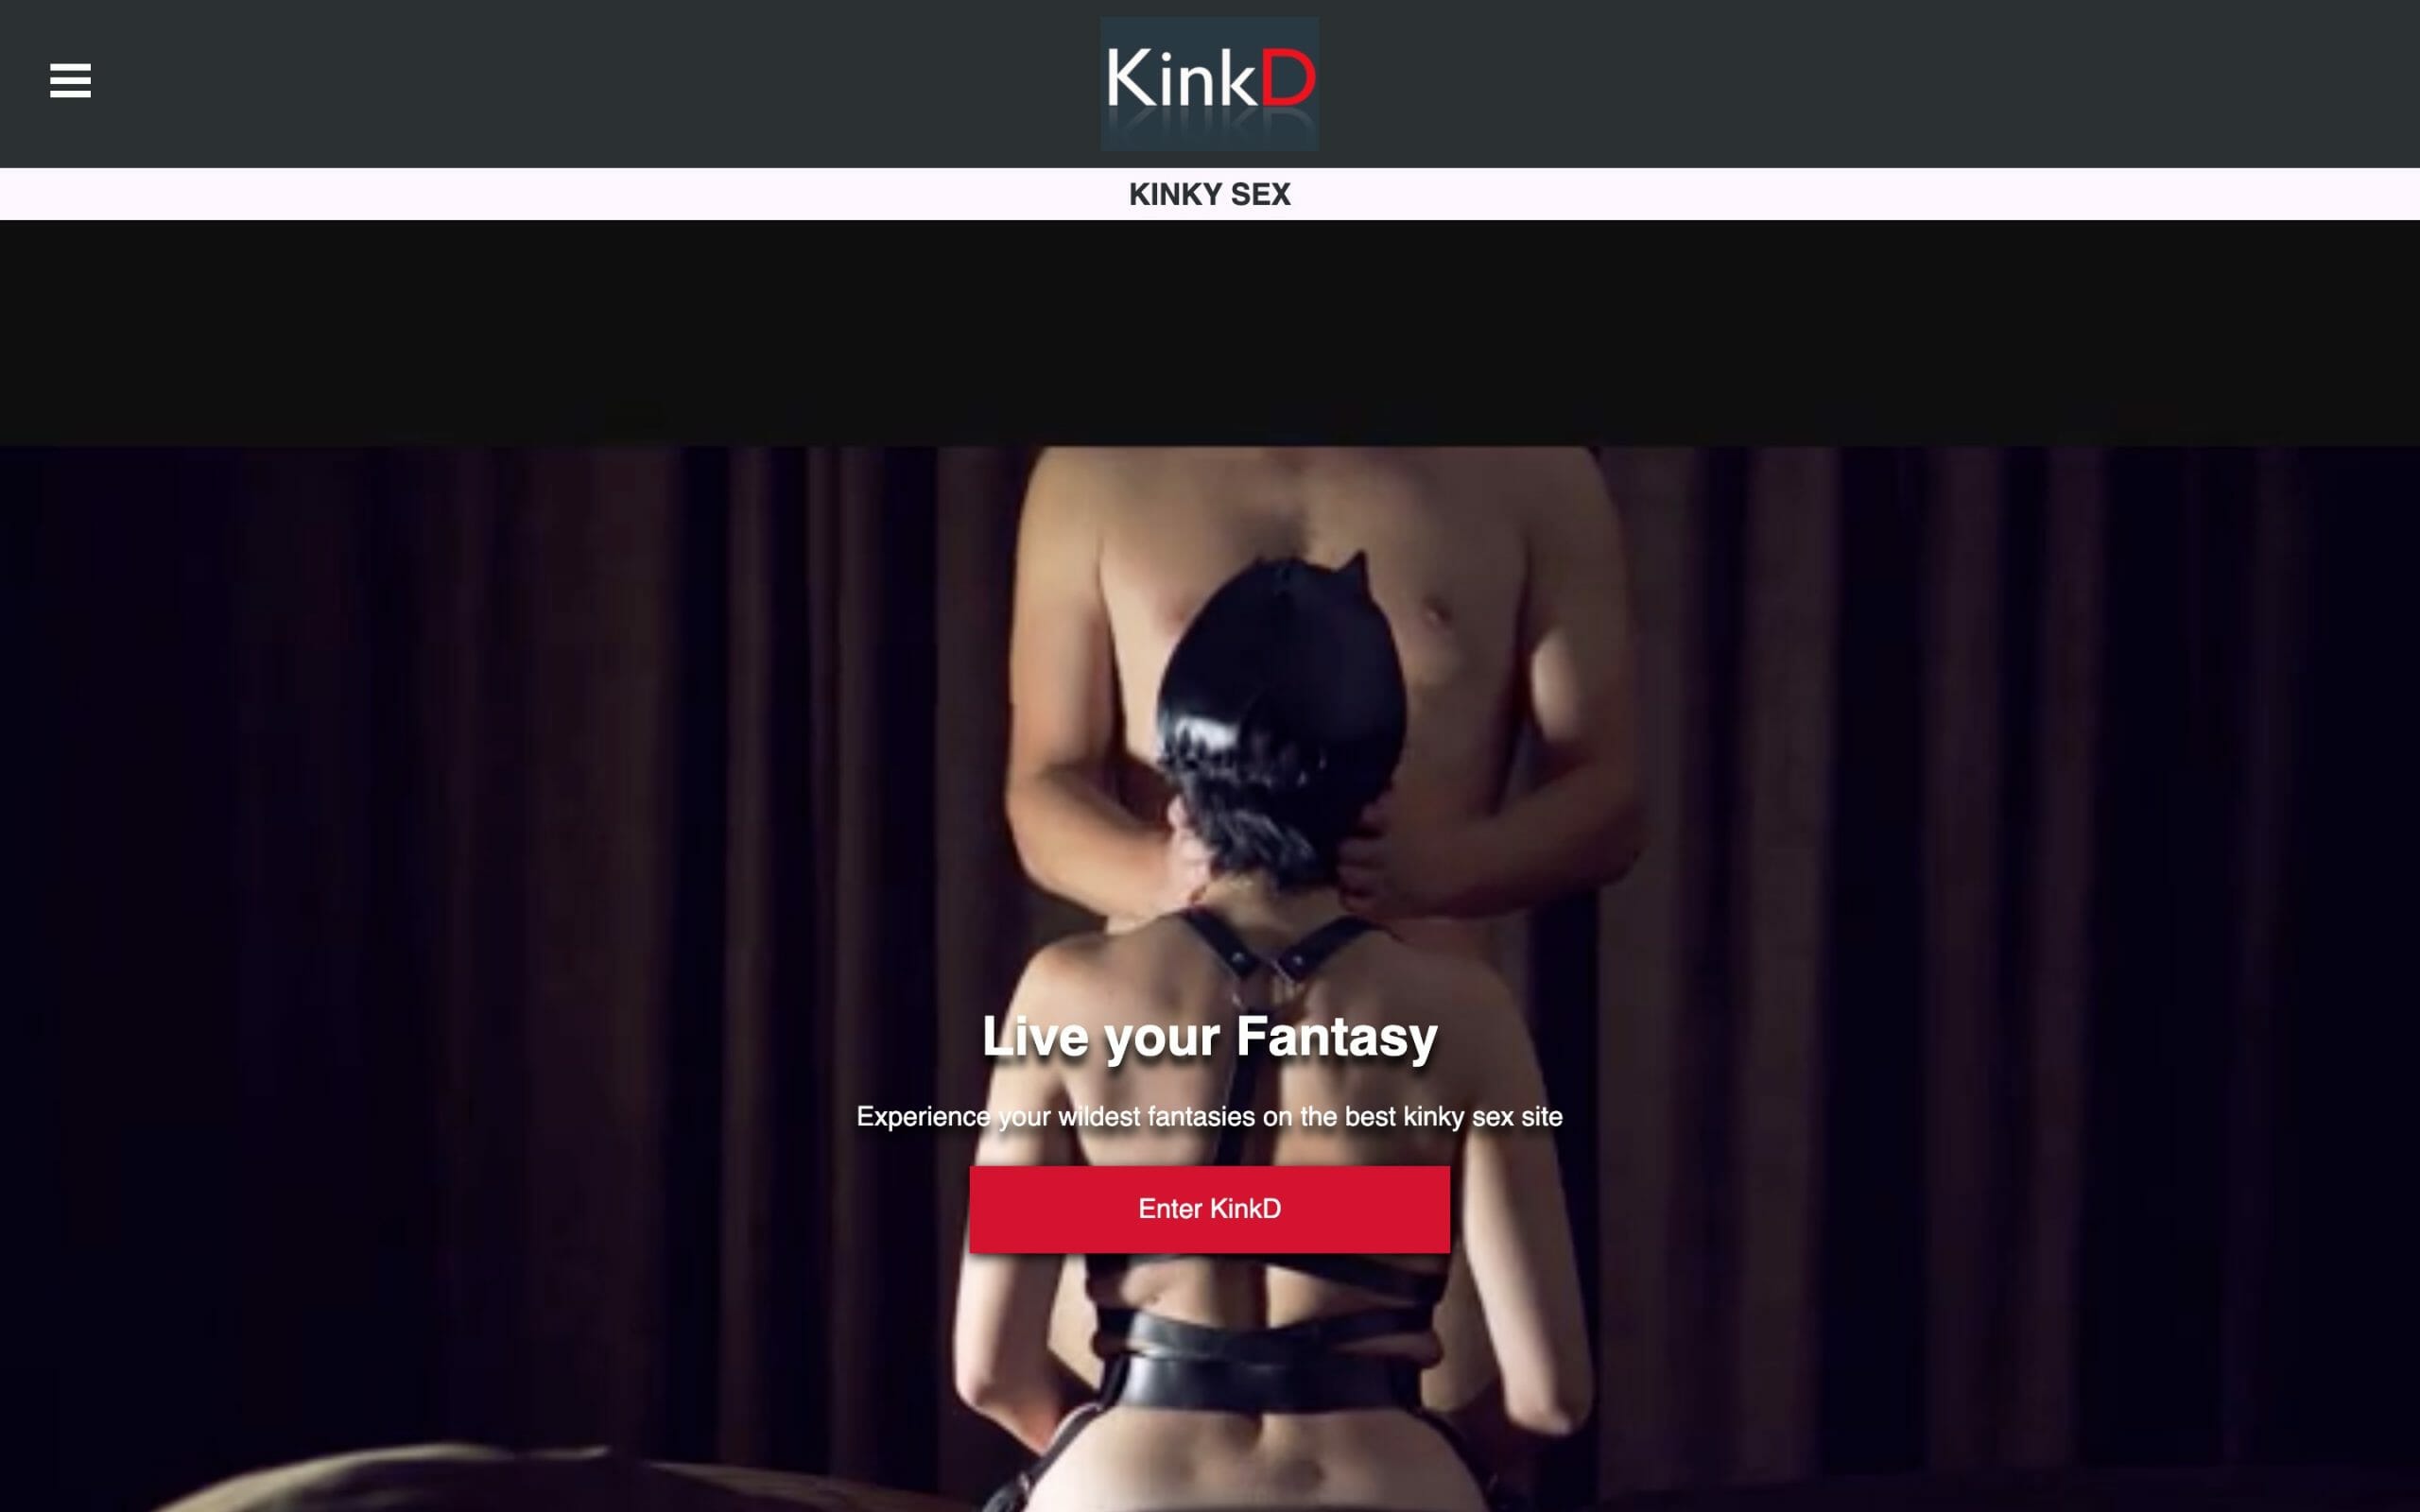 KinkD main page